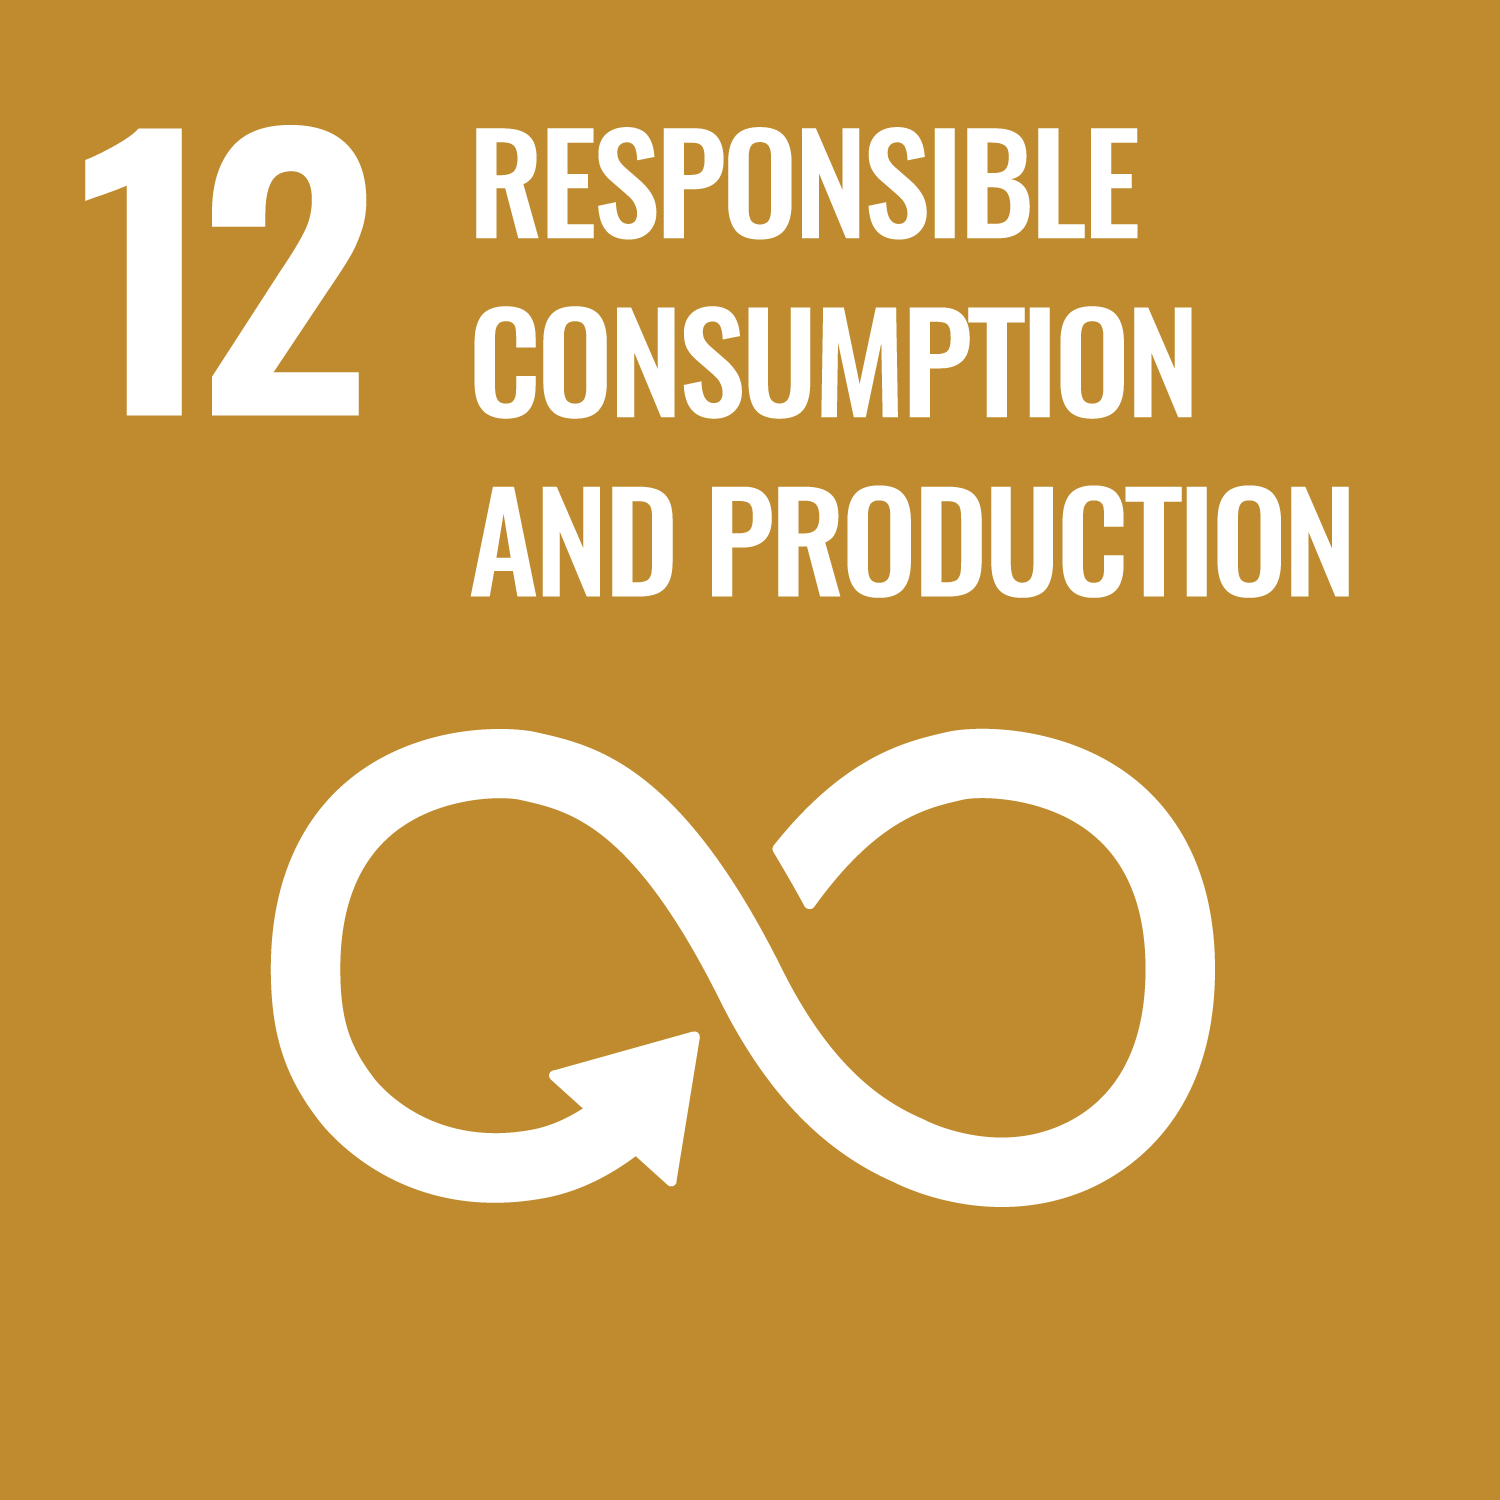 Sustainability goal 12